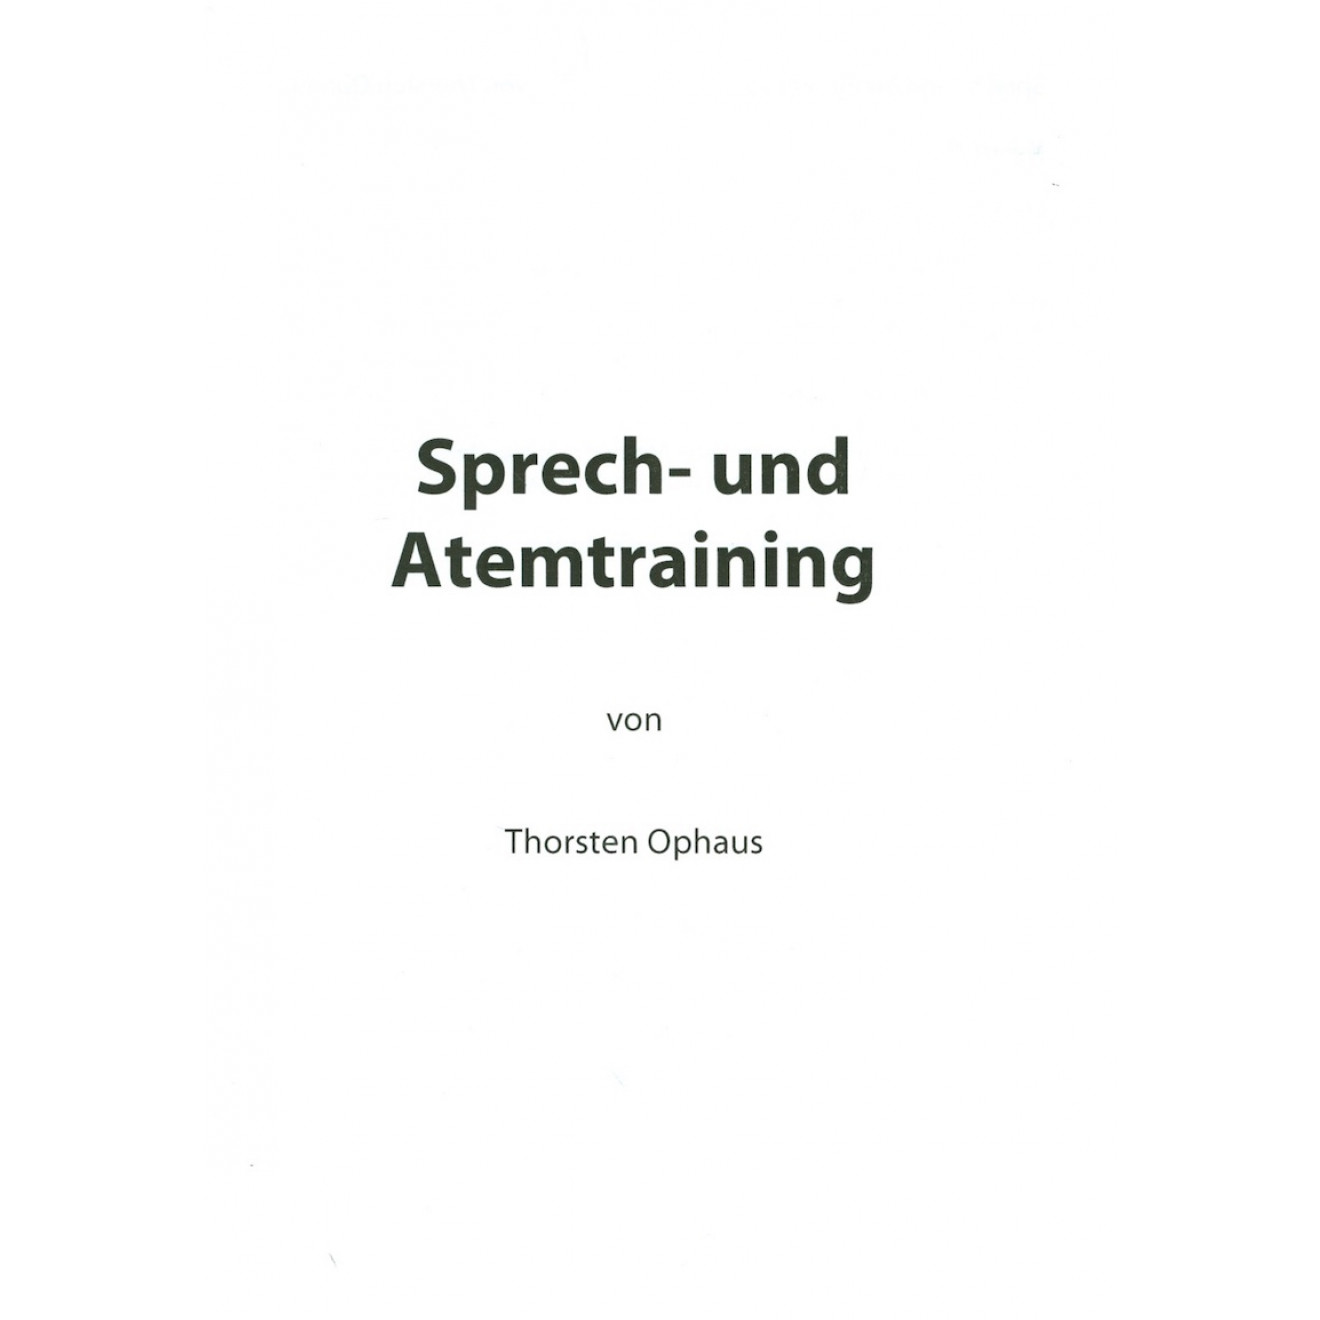 Sprech- und Atemtraining von Thorsten Ophaus